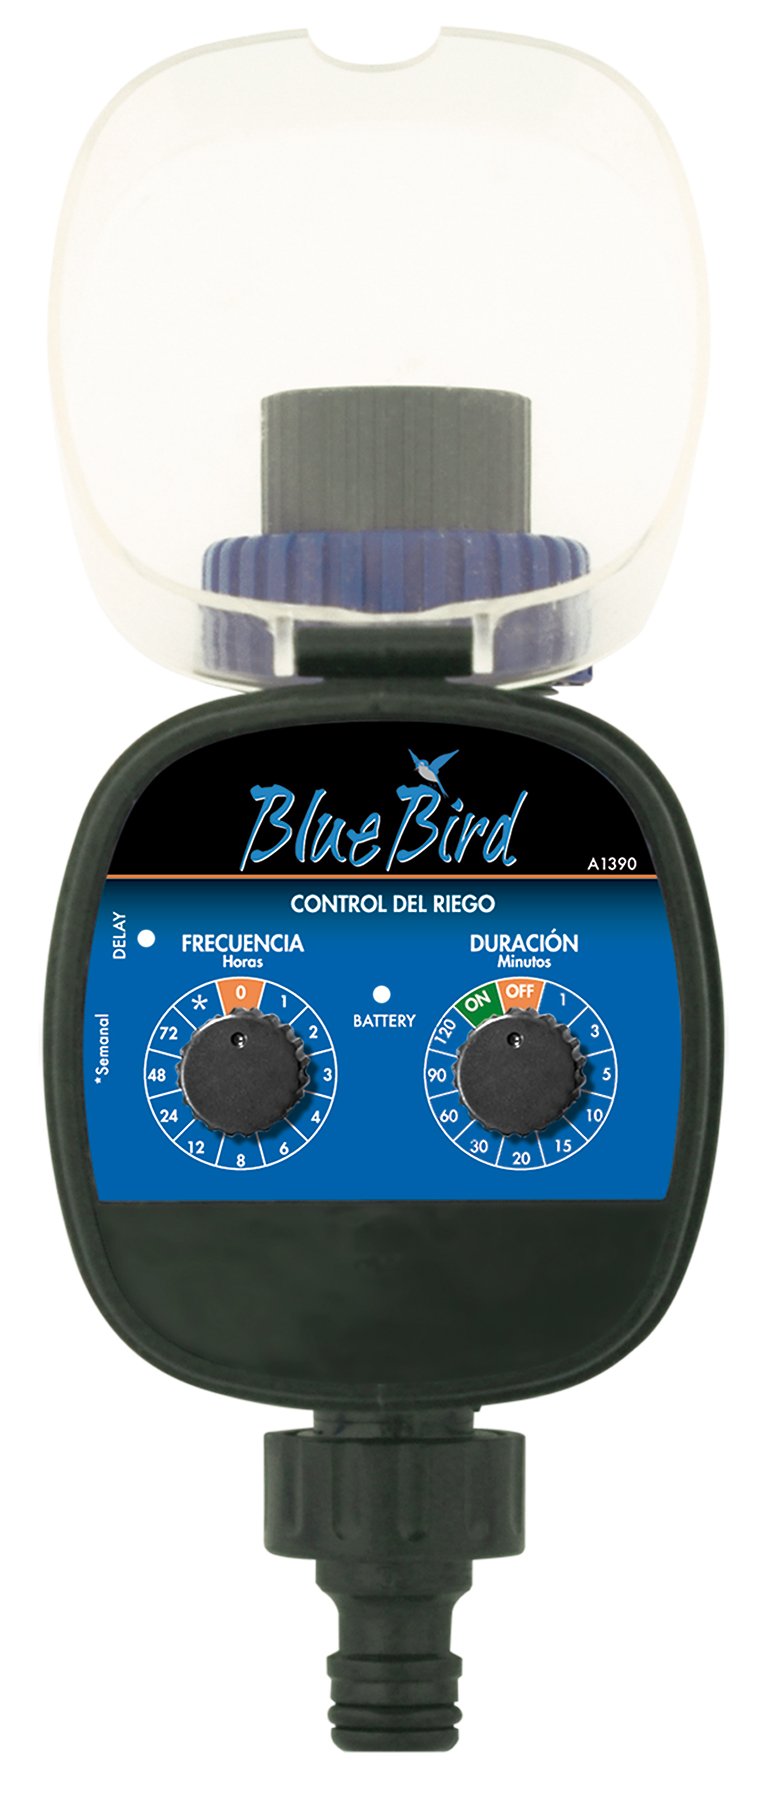 Bluebird Programmierer für Wasserhahn für automatische Bewässerung, 1 x 1 x 1 cm, A1390